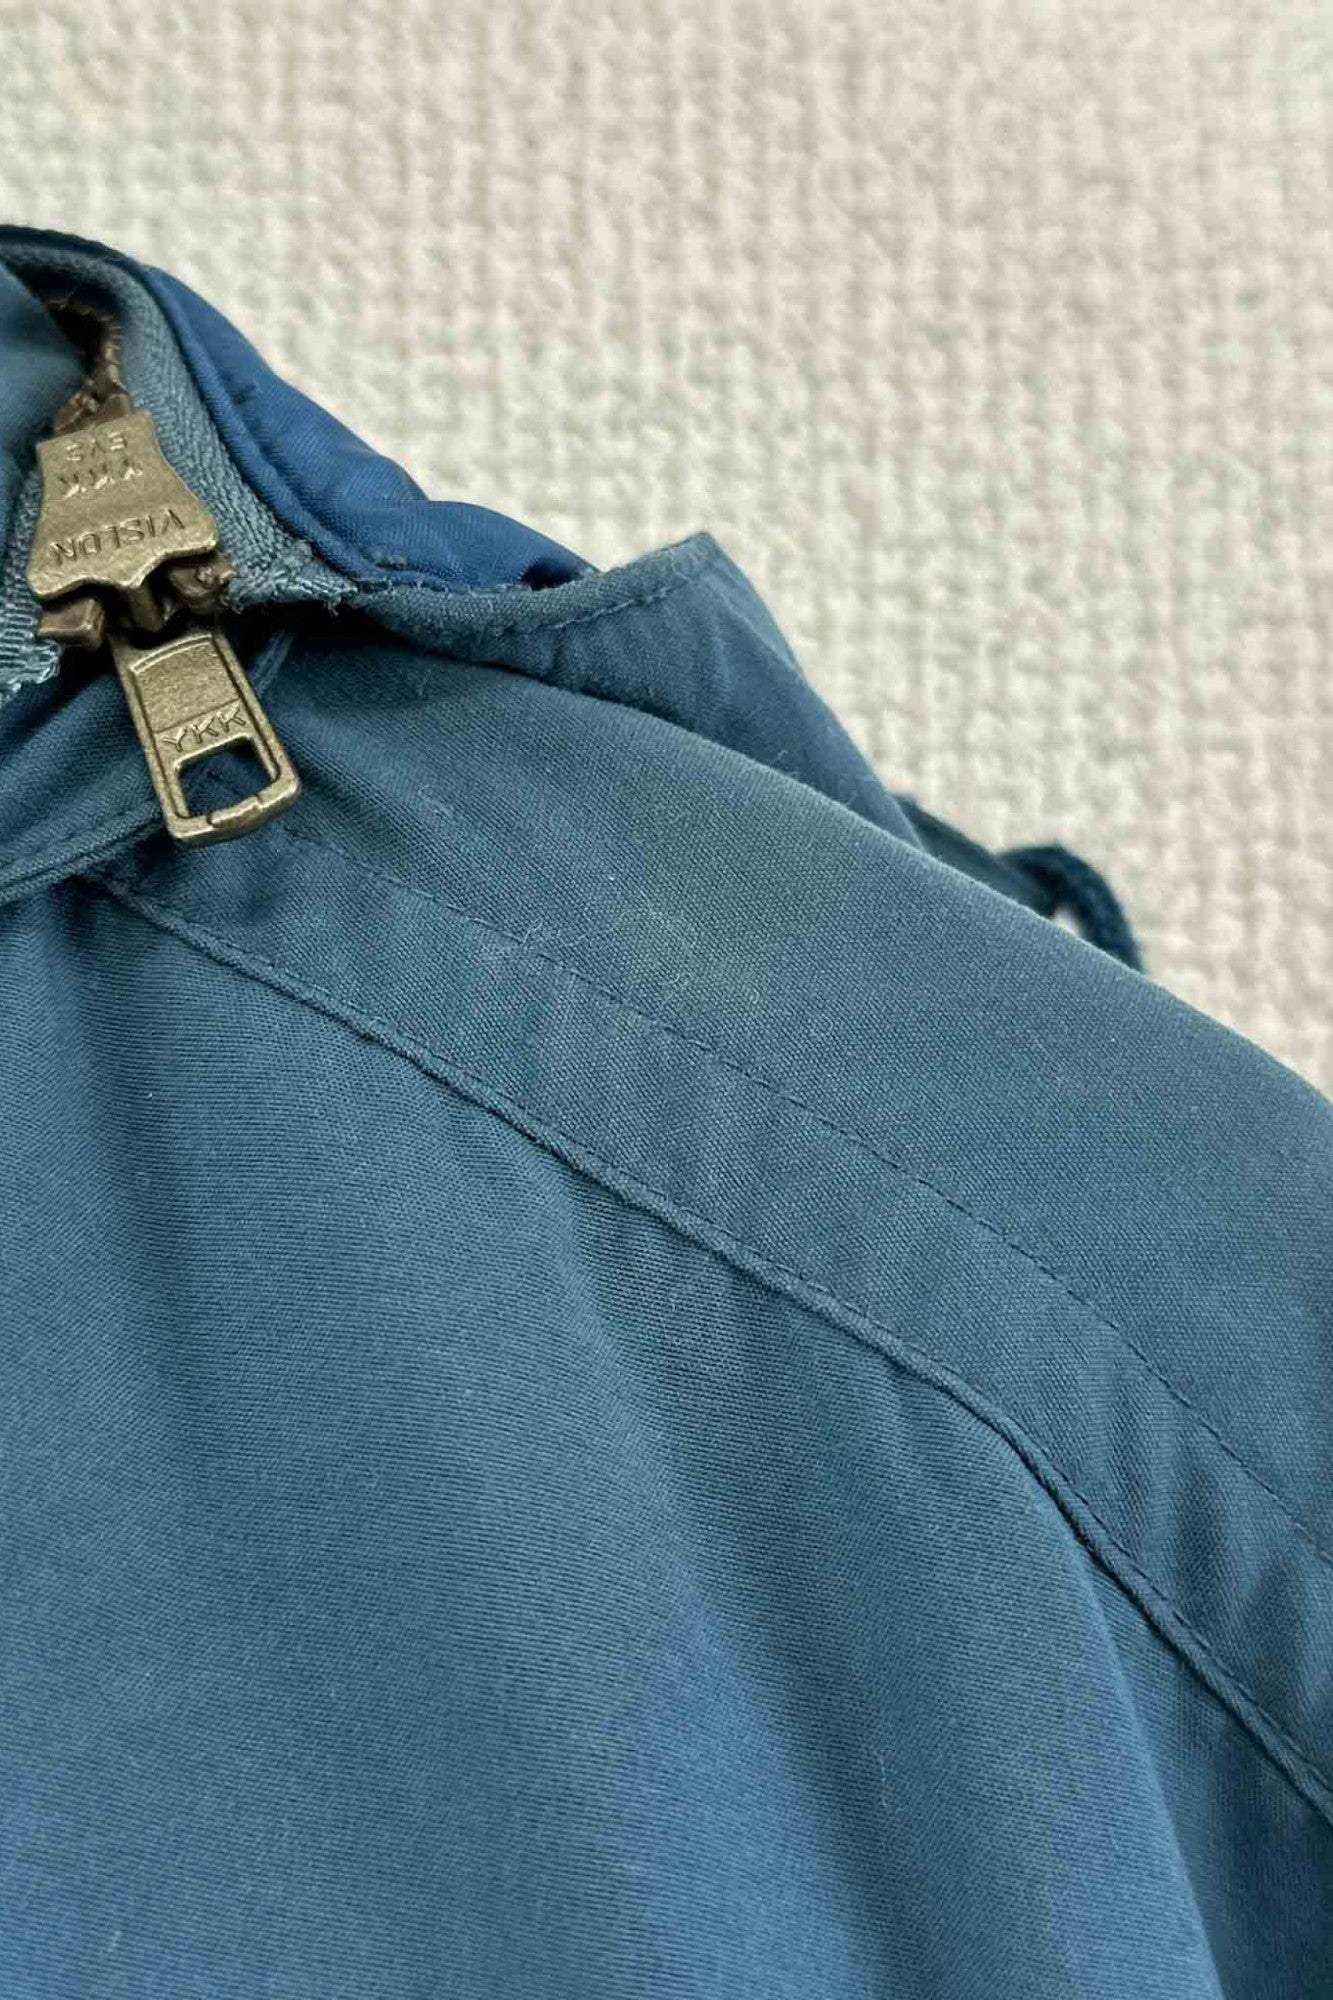 70 年代 80 年代 LLBean 蓝色外套